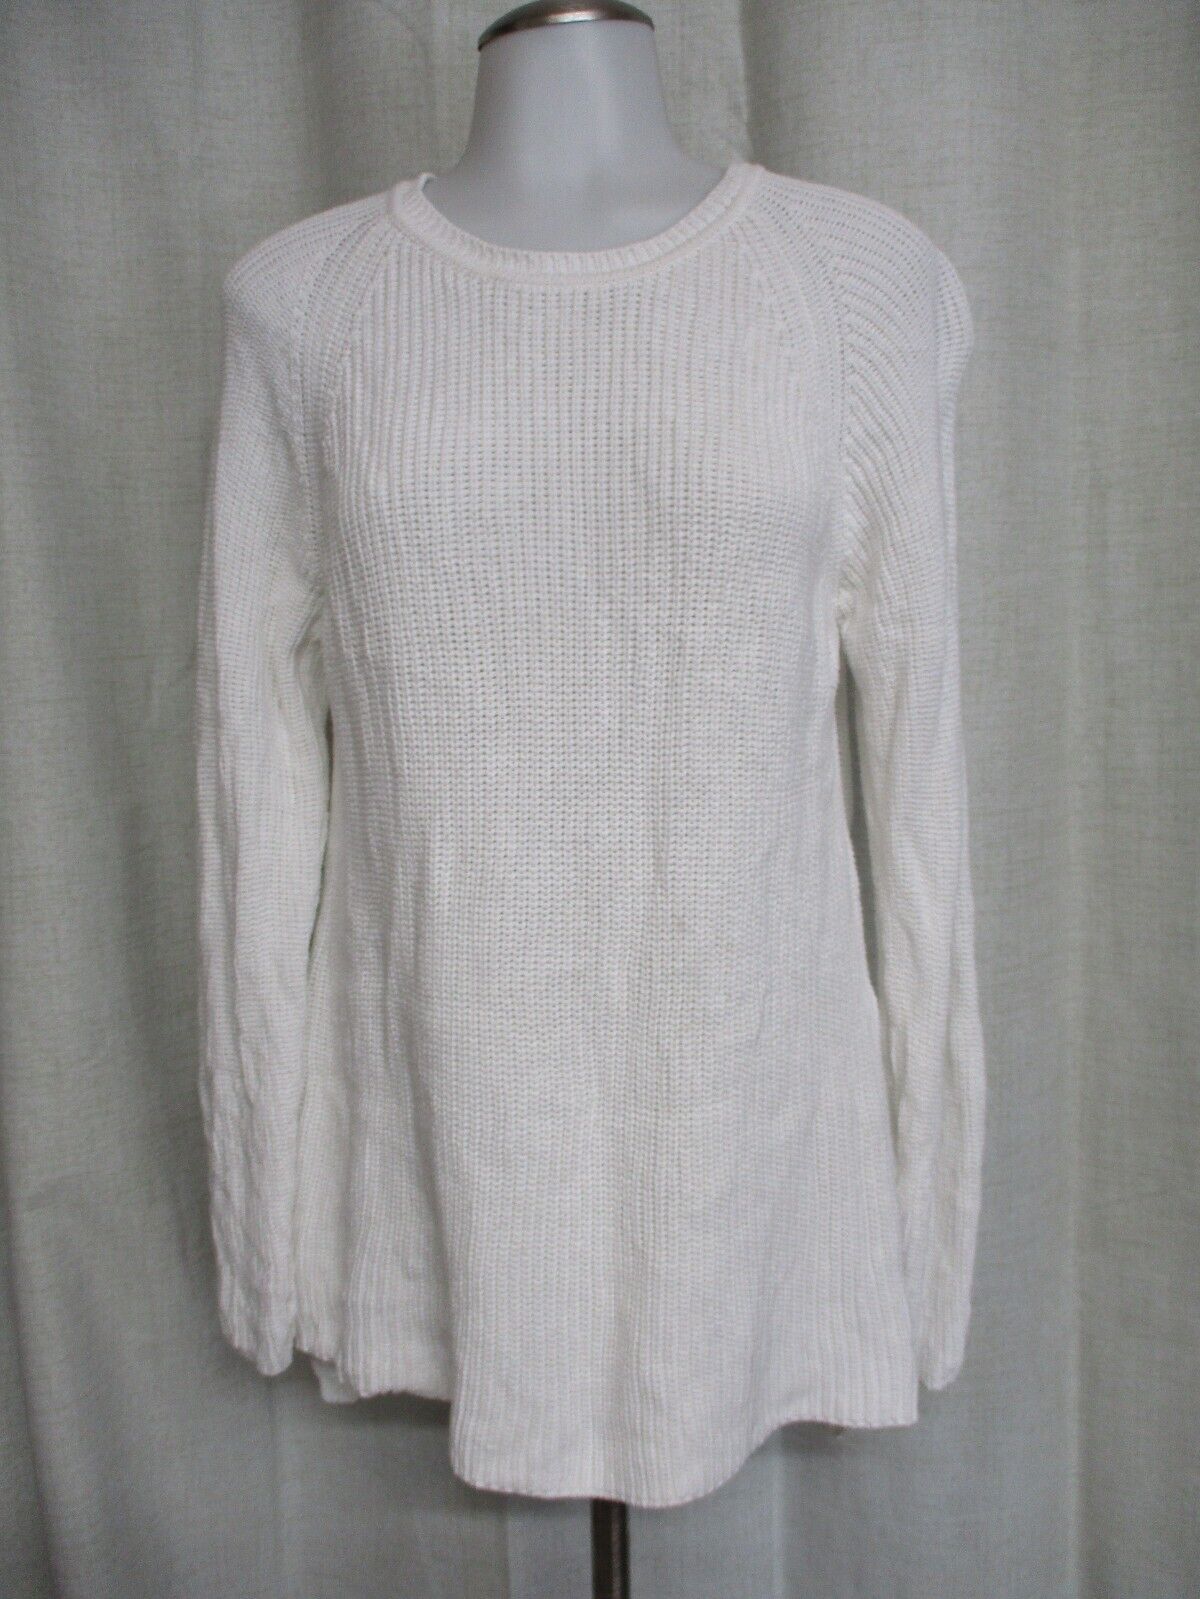 AKRIS Punto white knit pullover sweater sz 8